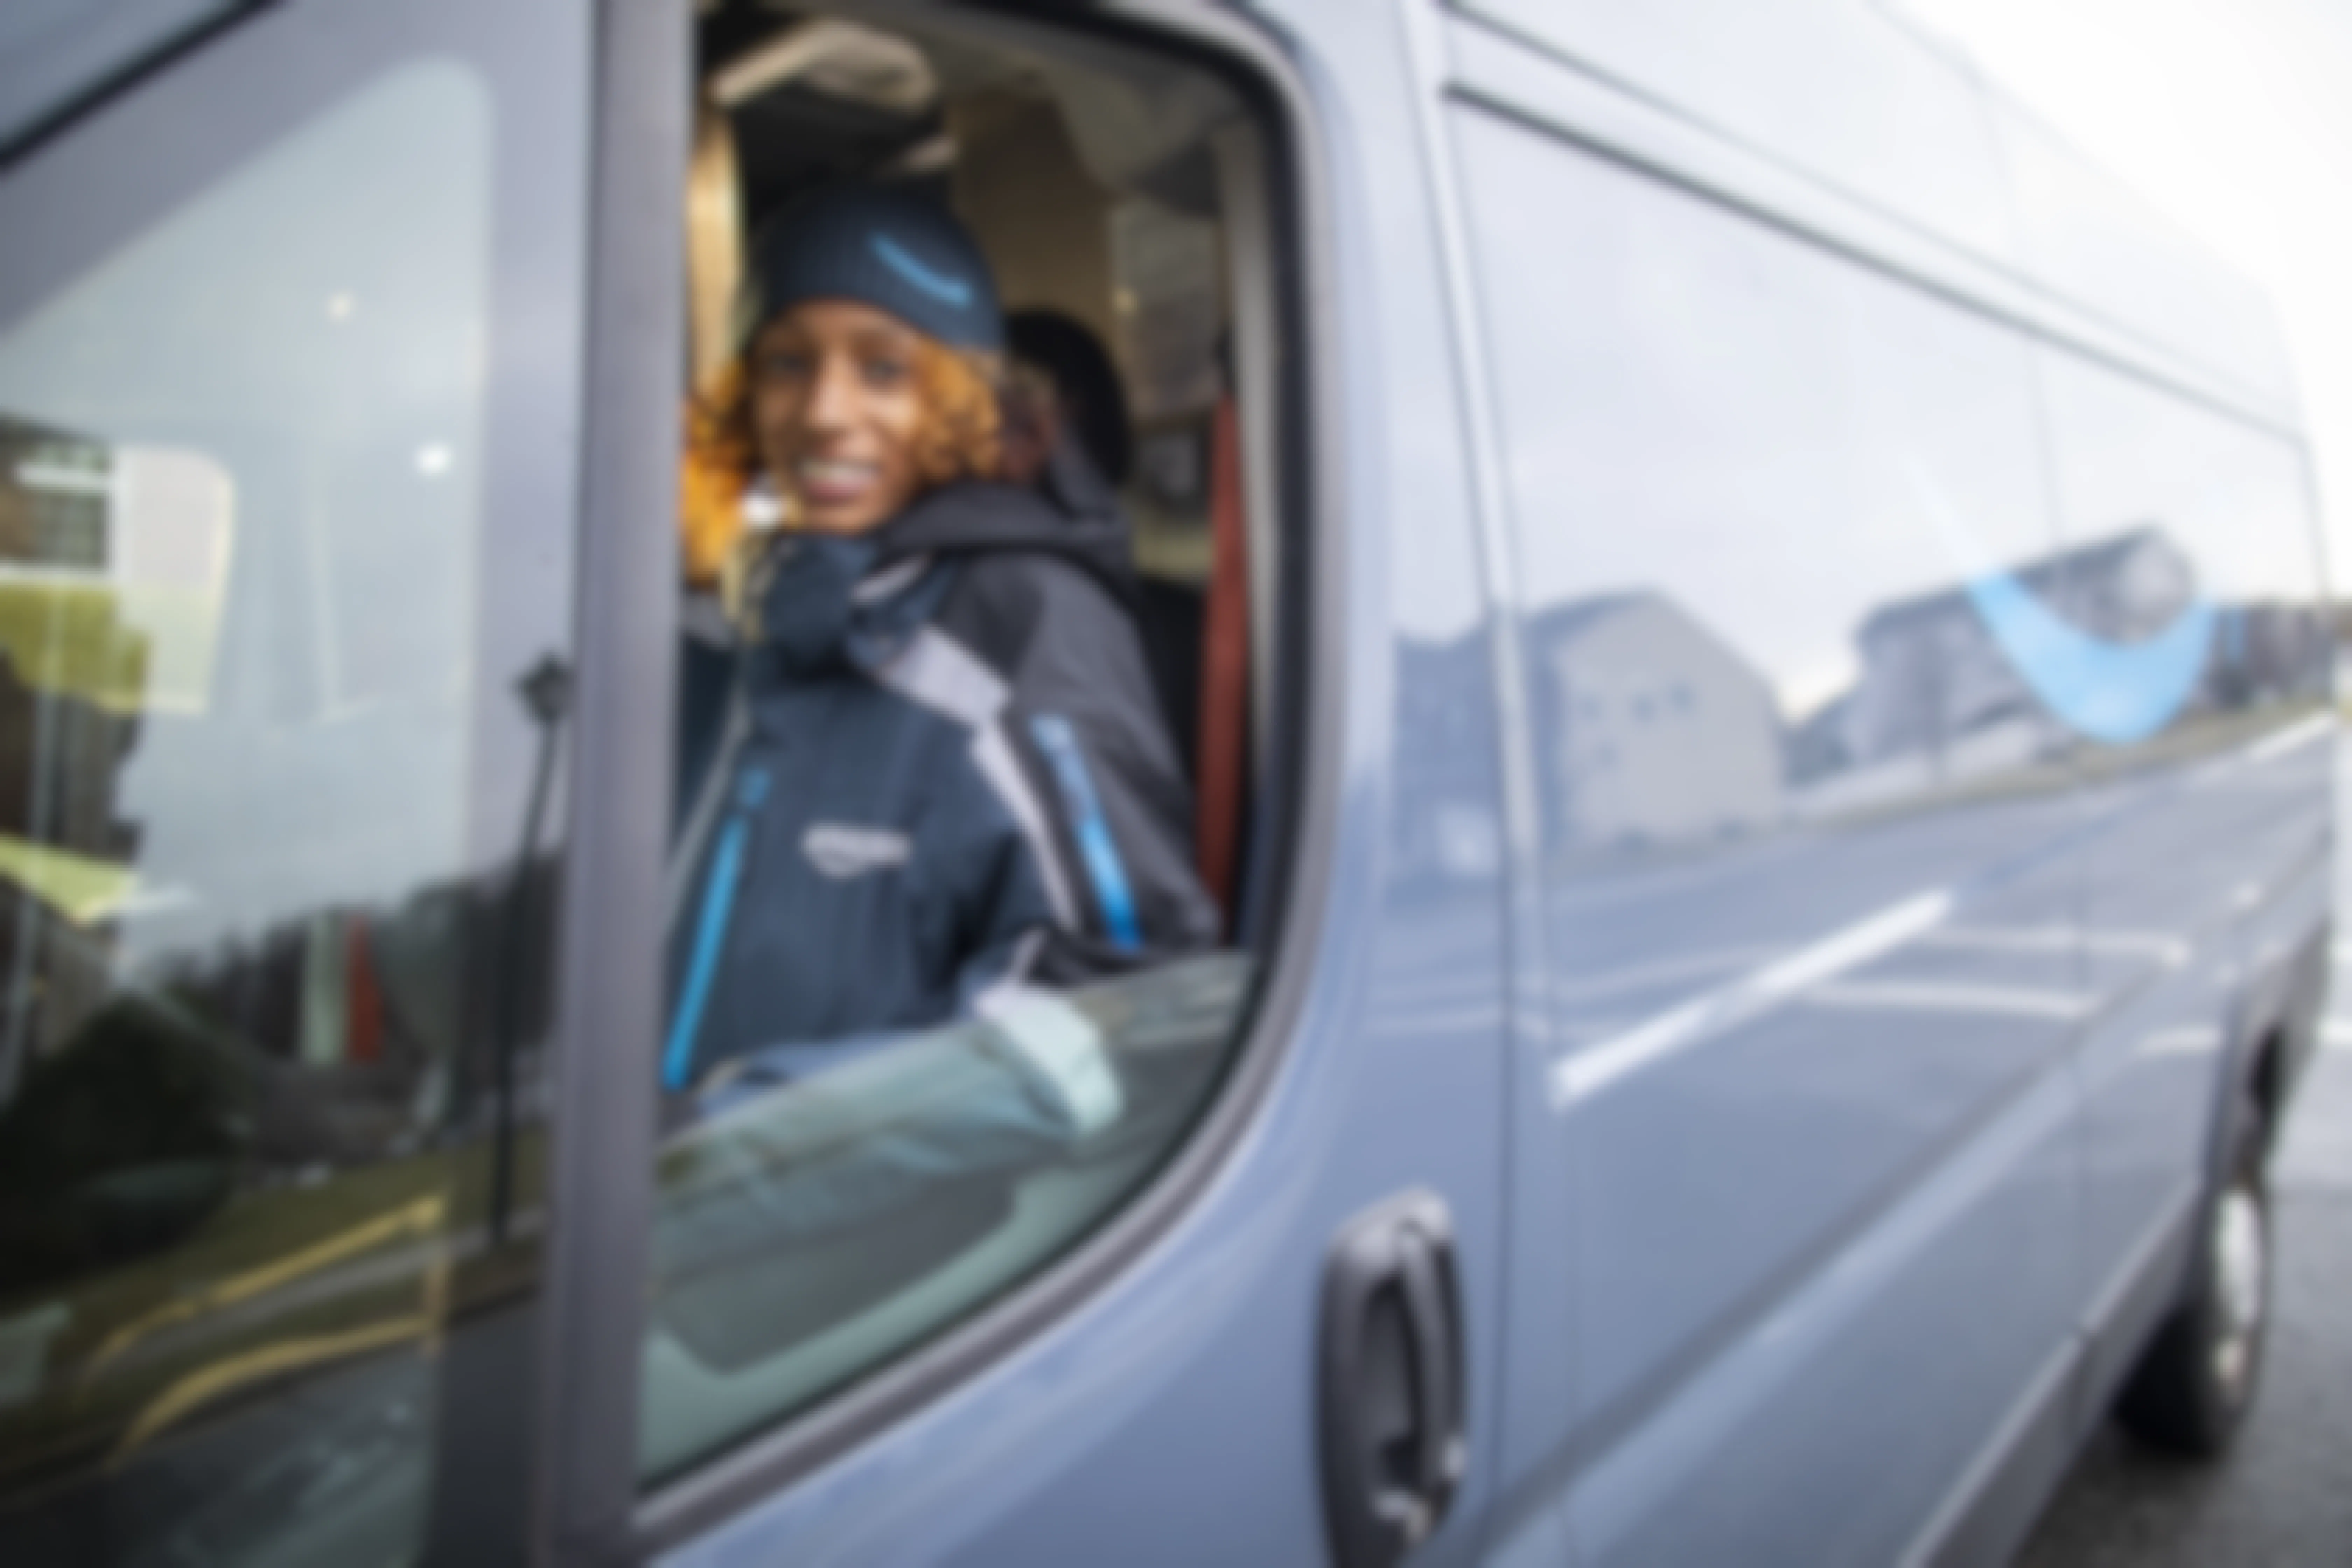 An Amazon employee driving a Prime van